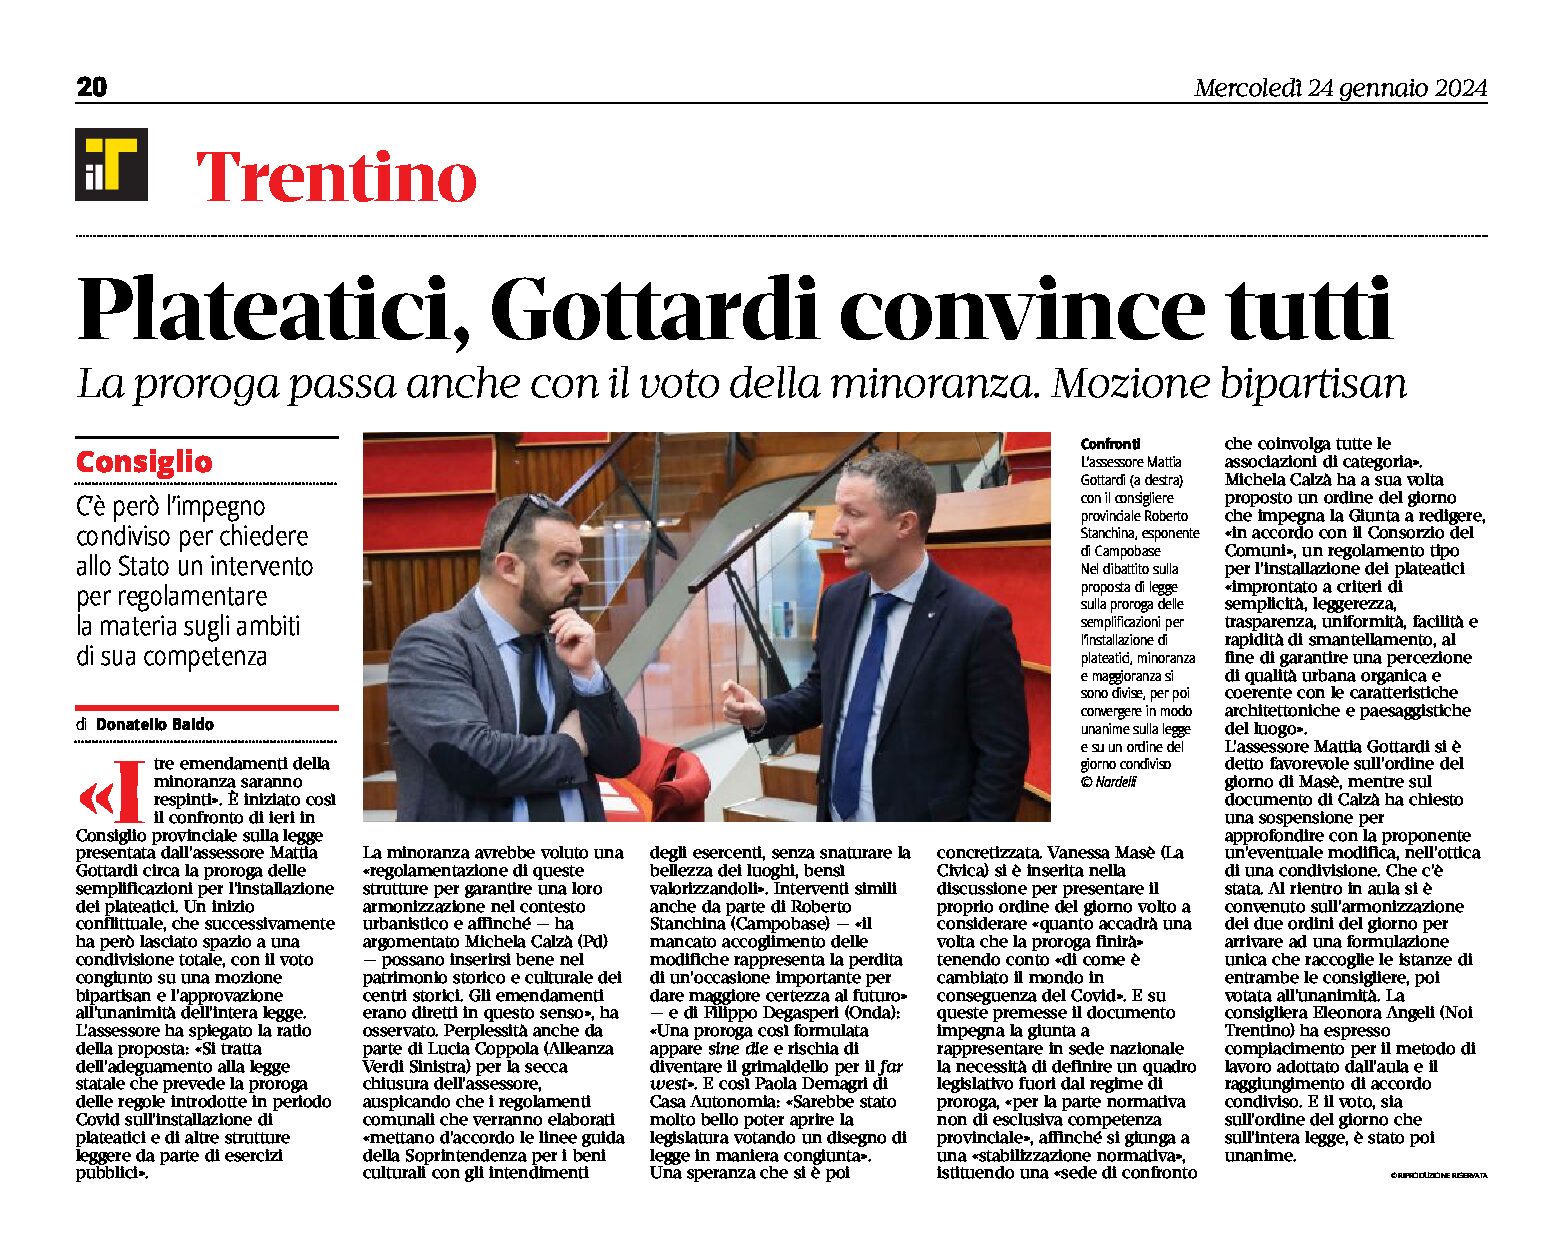 Trentino, plateatici: Gottardi convince tutti